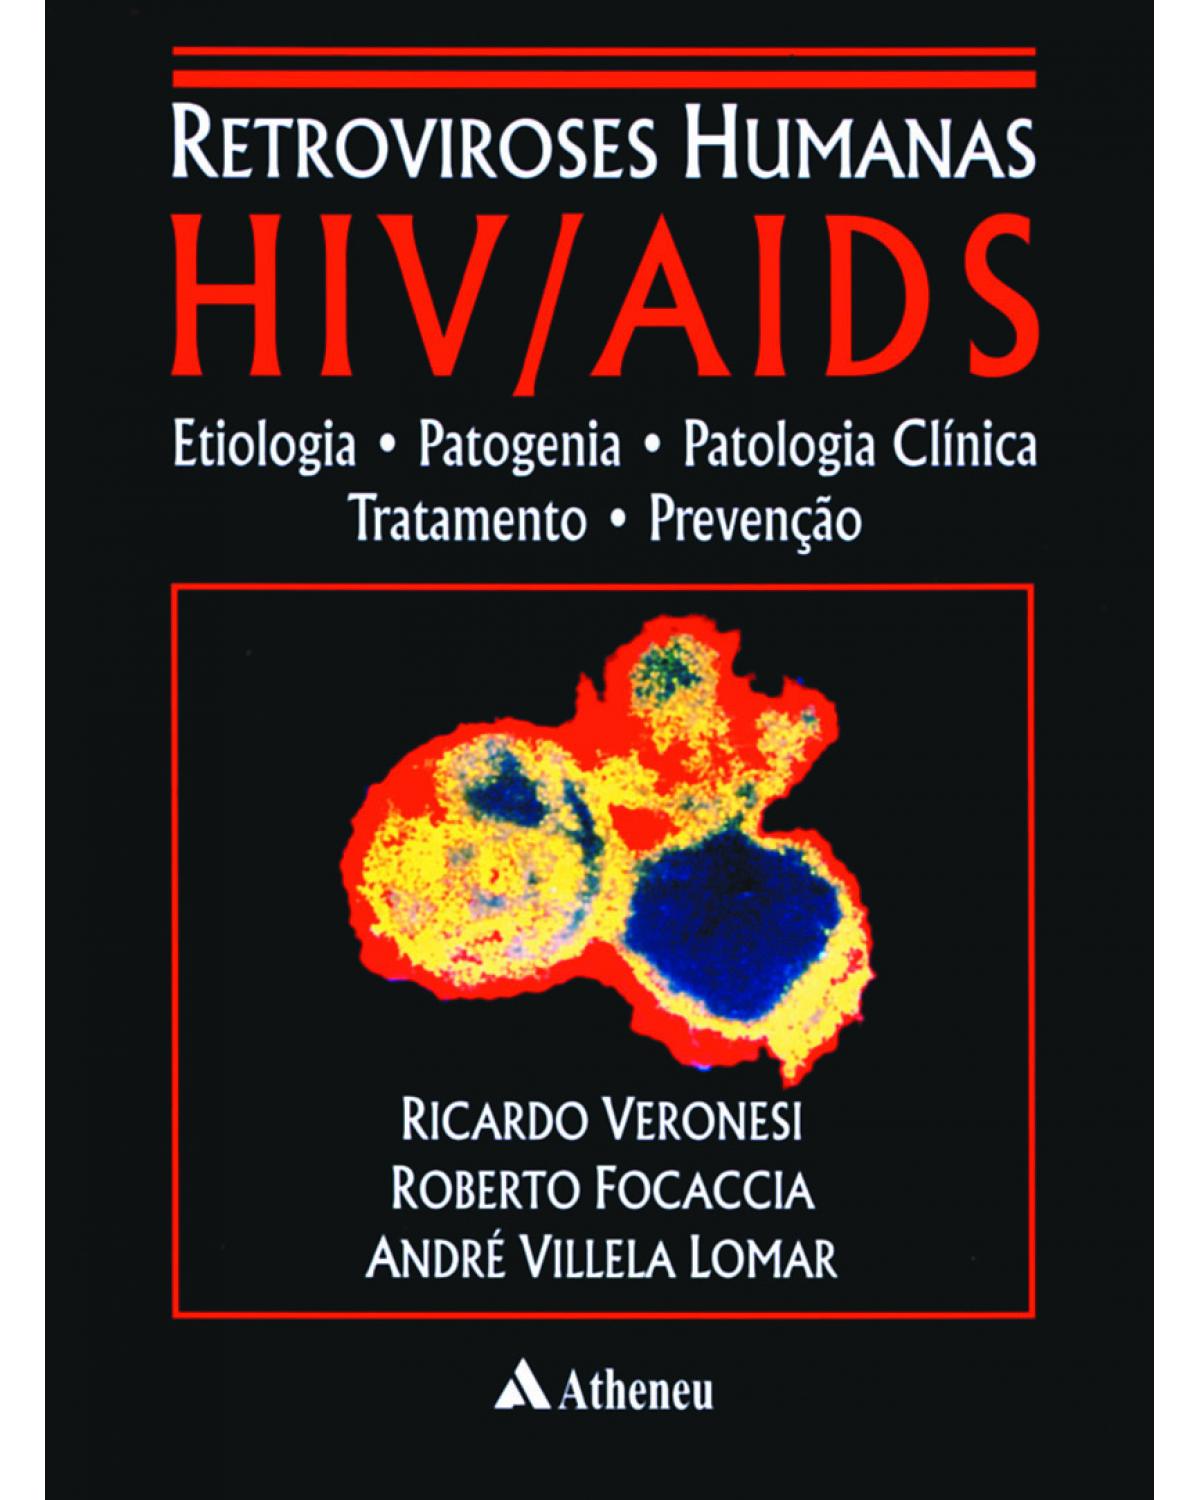 Retroviroses humanas HIV/AIDS - etiologia, patogenia, patologia clínica, tratamento e prevenção - 1ª Edição | 2001